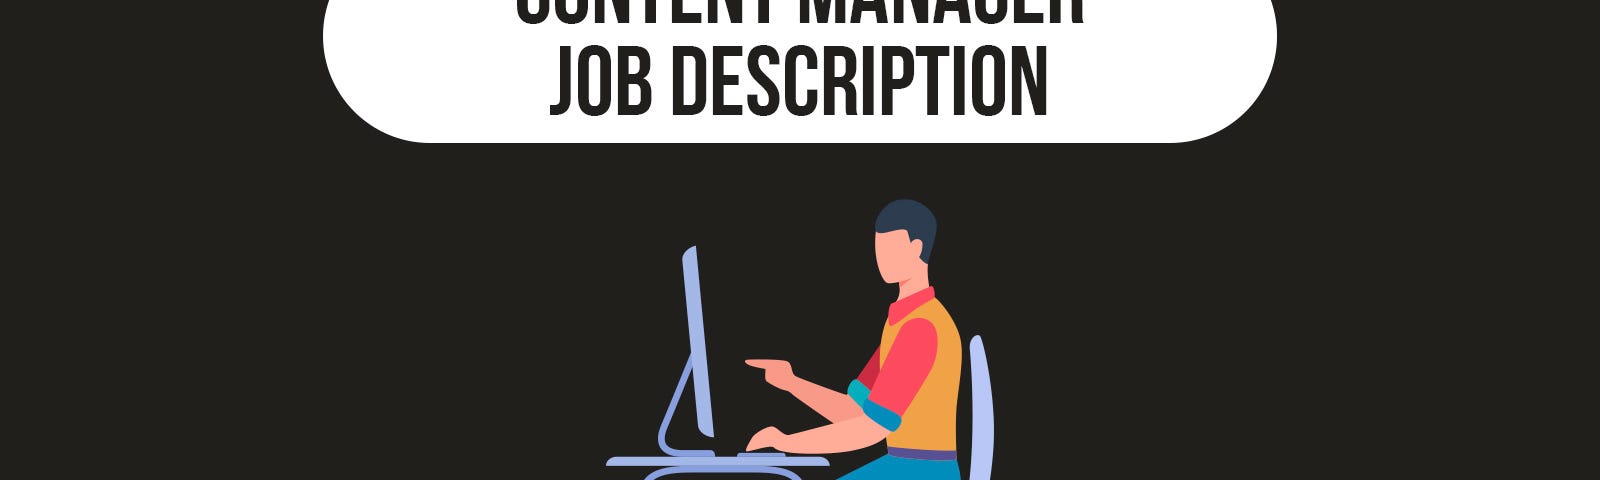 Content Manager, Job Description, Content Curation